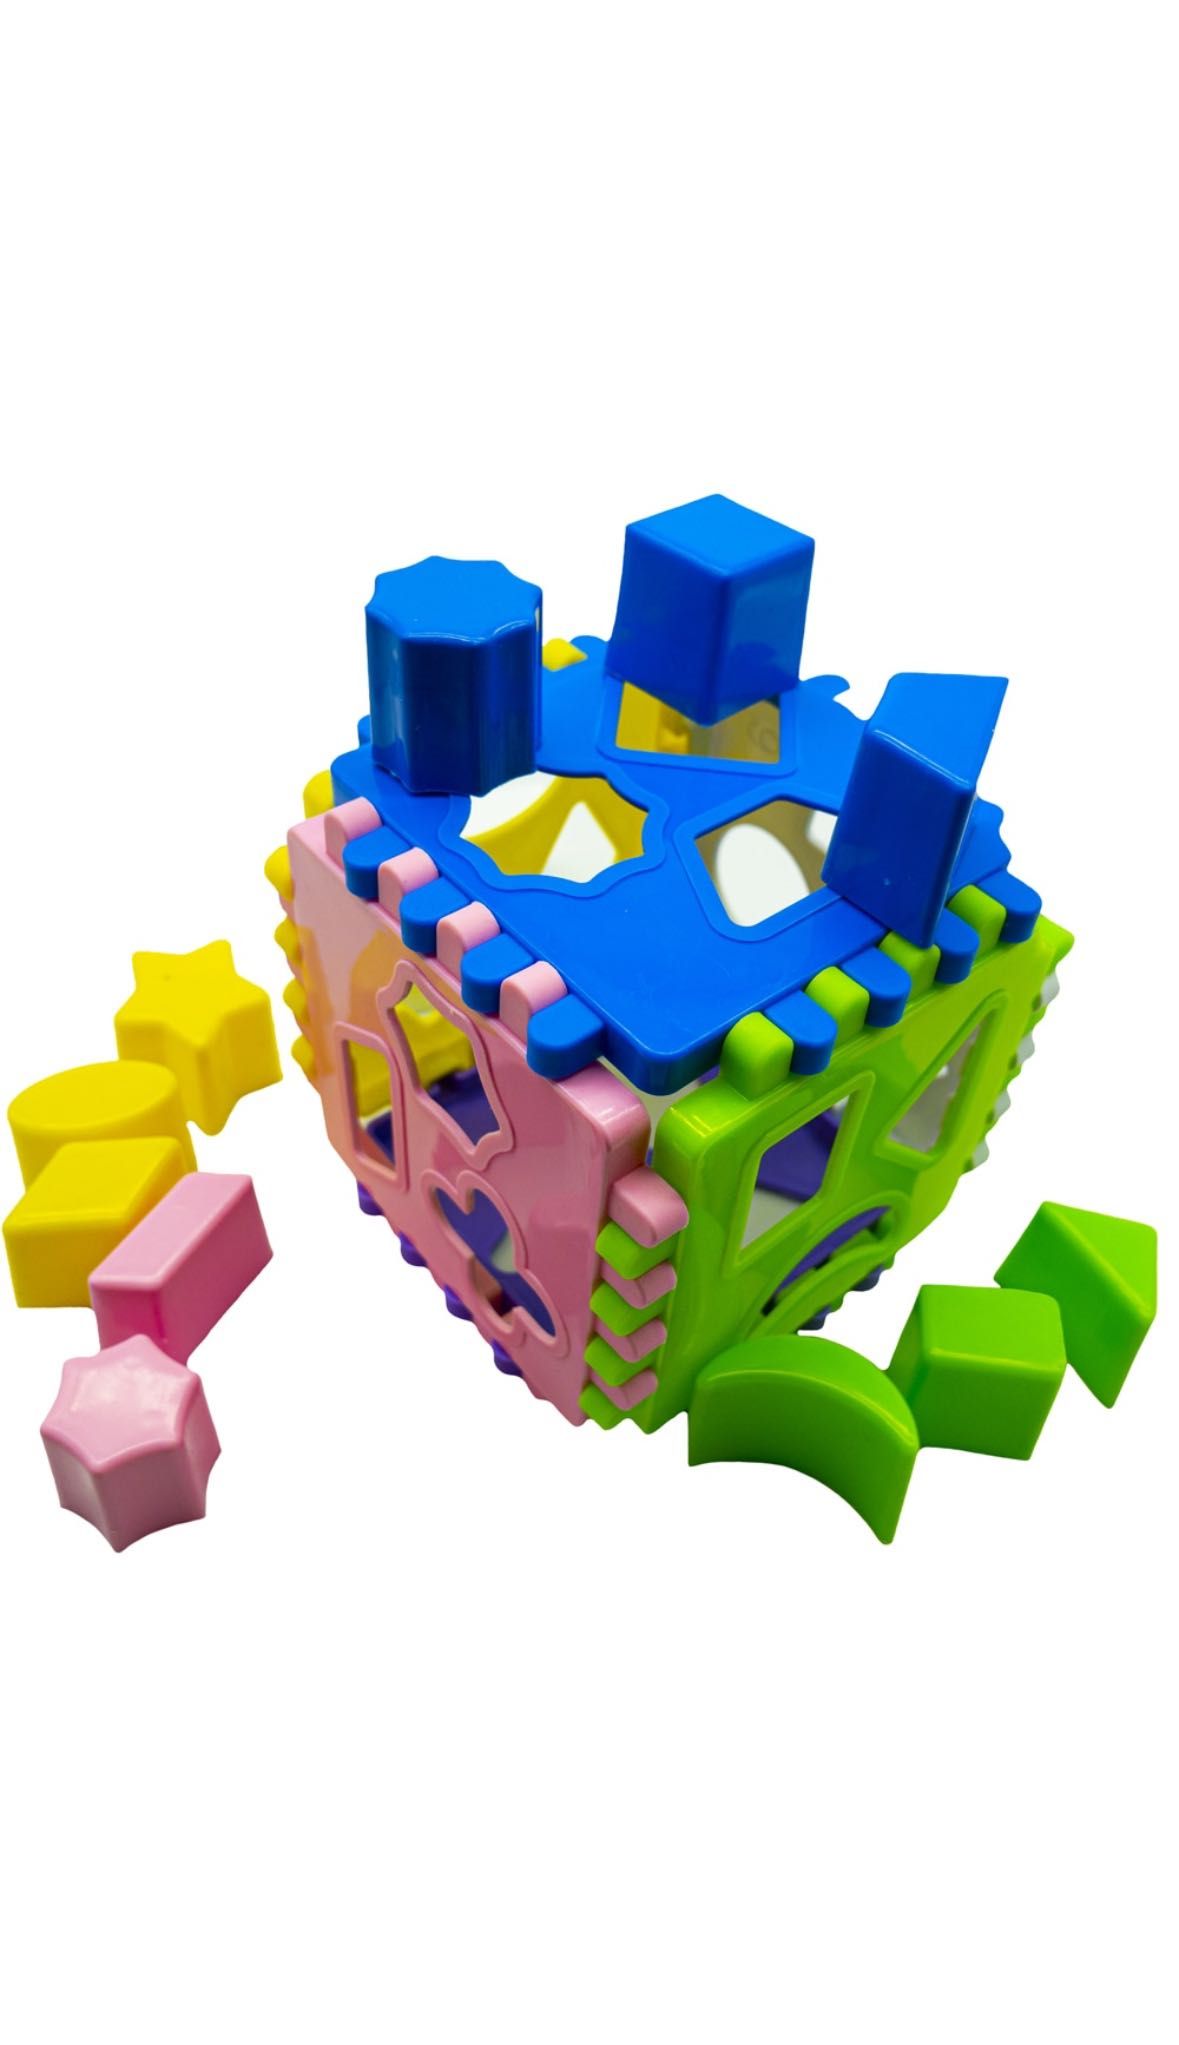 Cub educativ de sortare a formelor geometrice 24 piese